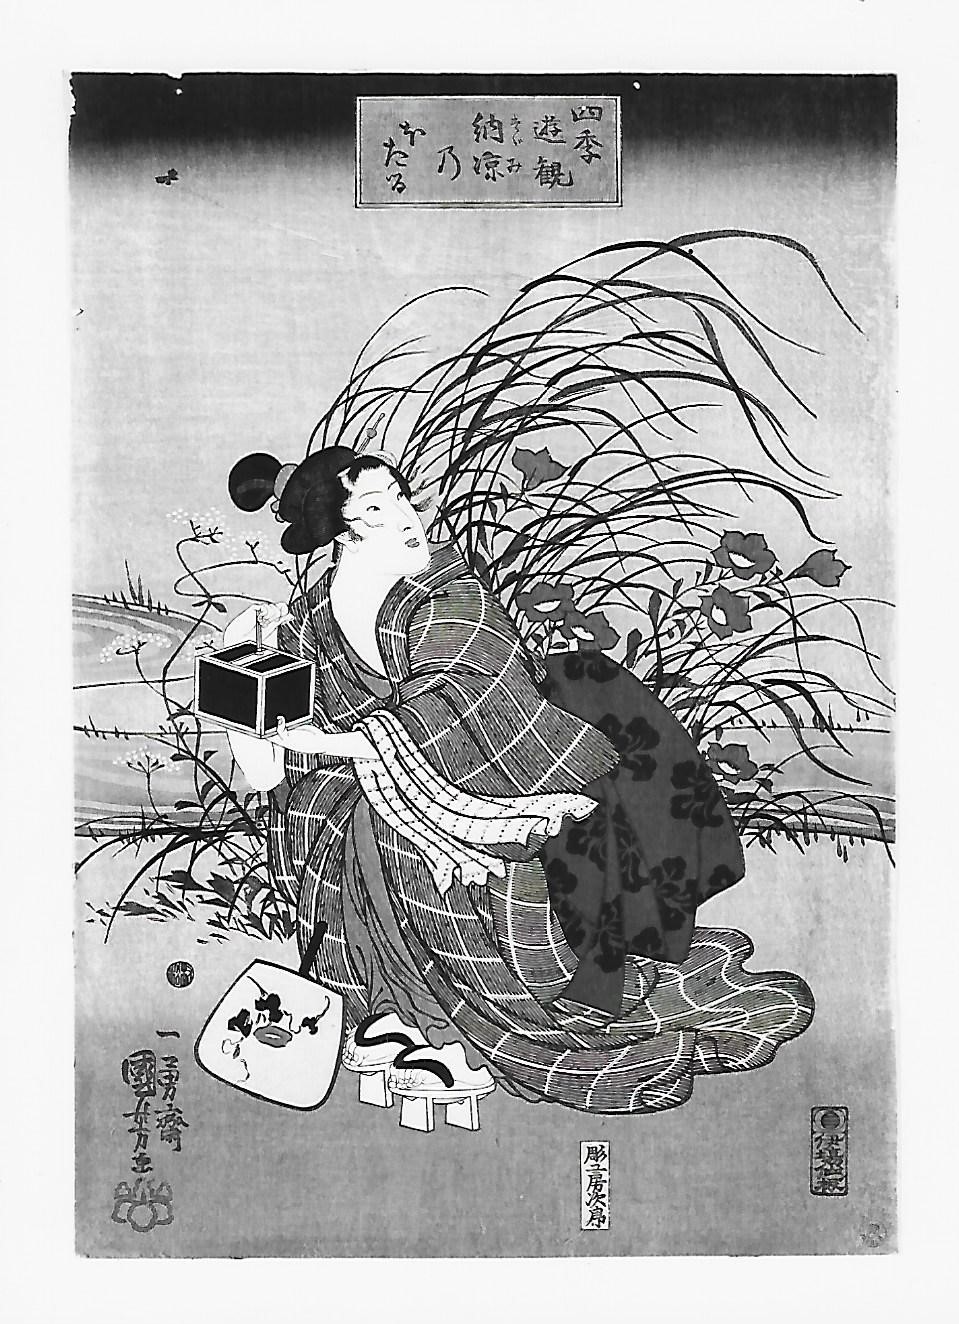 Gite di piacere nelle 4 stagioni: lucciole nel godimento della freschezza serale, Figura femminile accovacciata con gabbietta per lucciole (stampa) di Utagawa Ichiyusai Kuniyoshi (prima metà XIX)